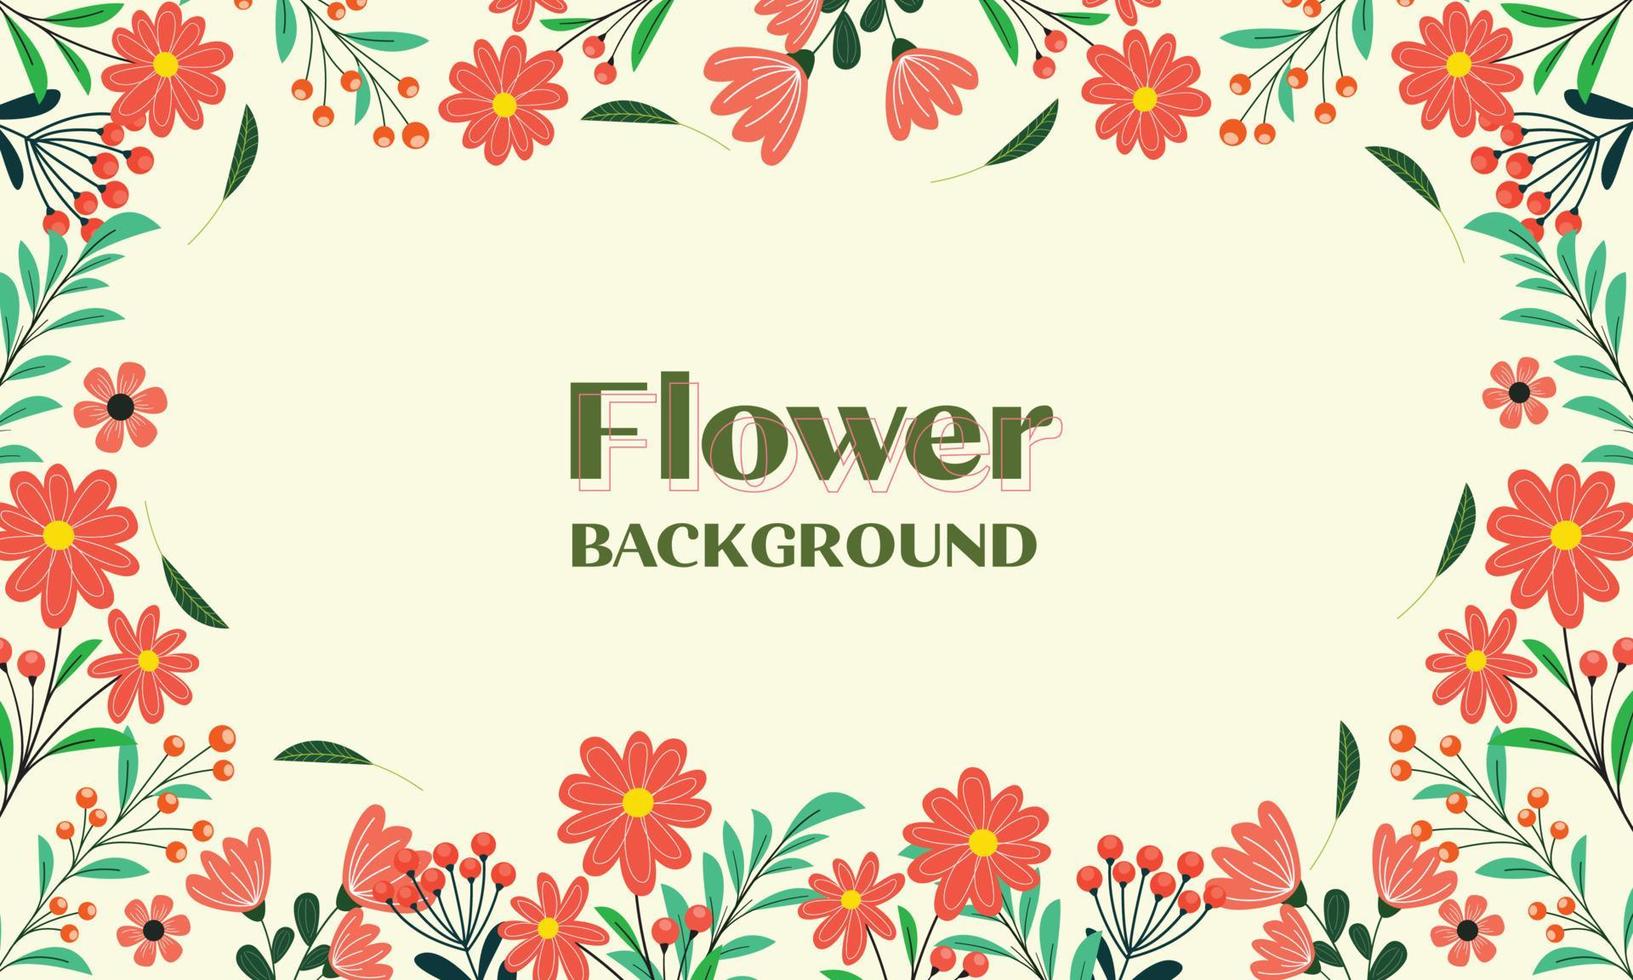 Spring frame flowers illustration. Frame floral. Wedding or invitation flower concept vector